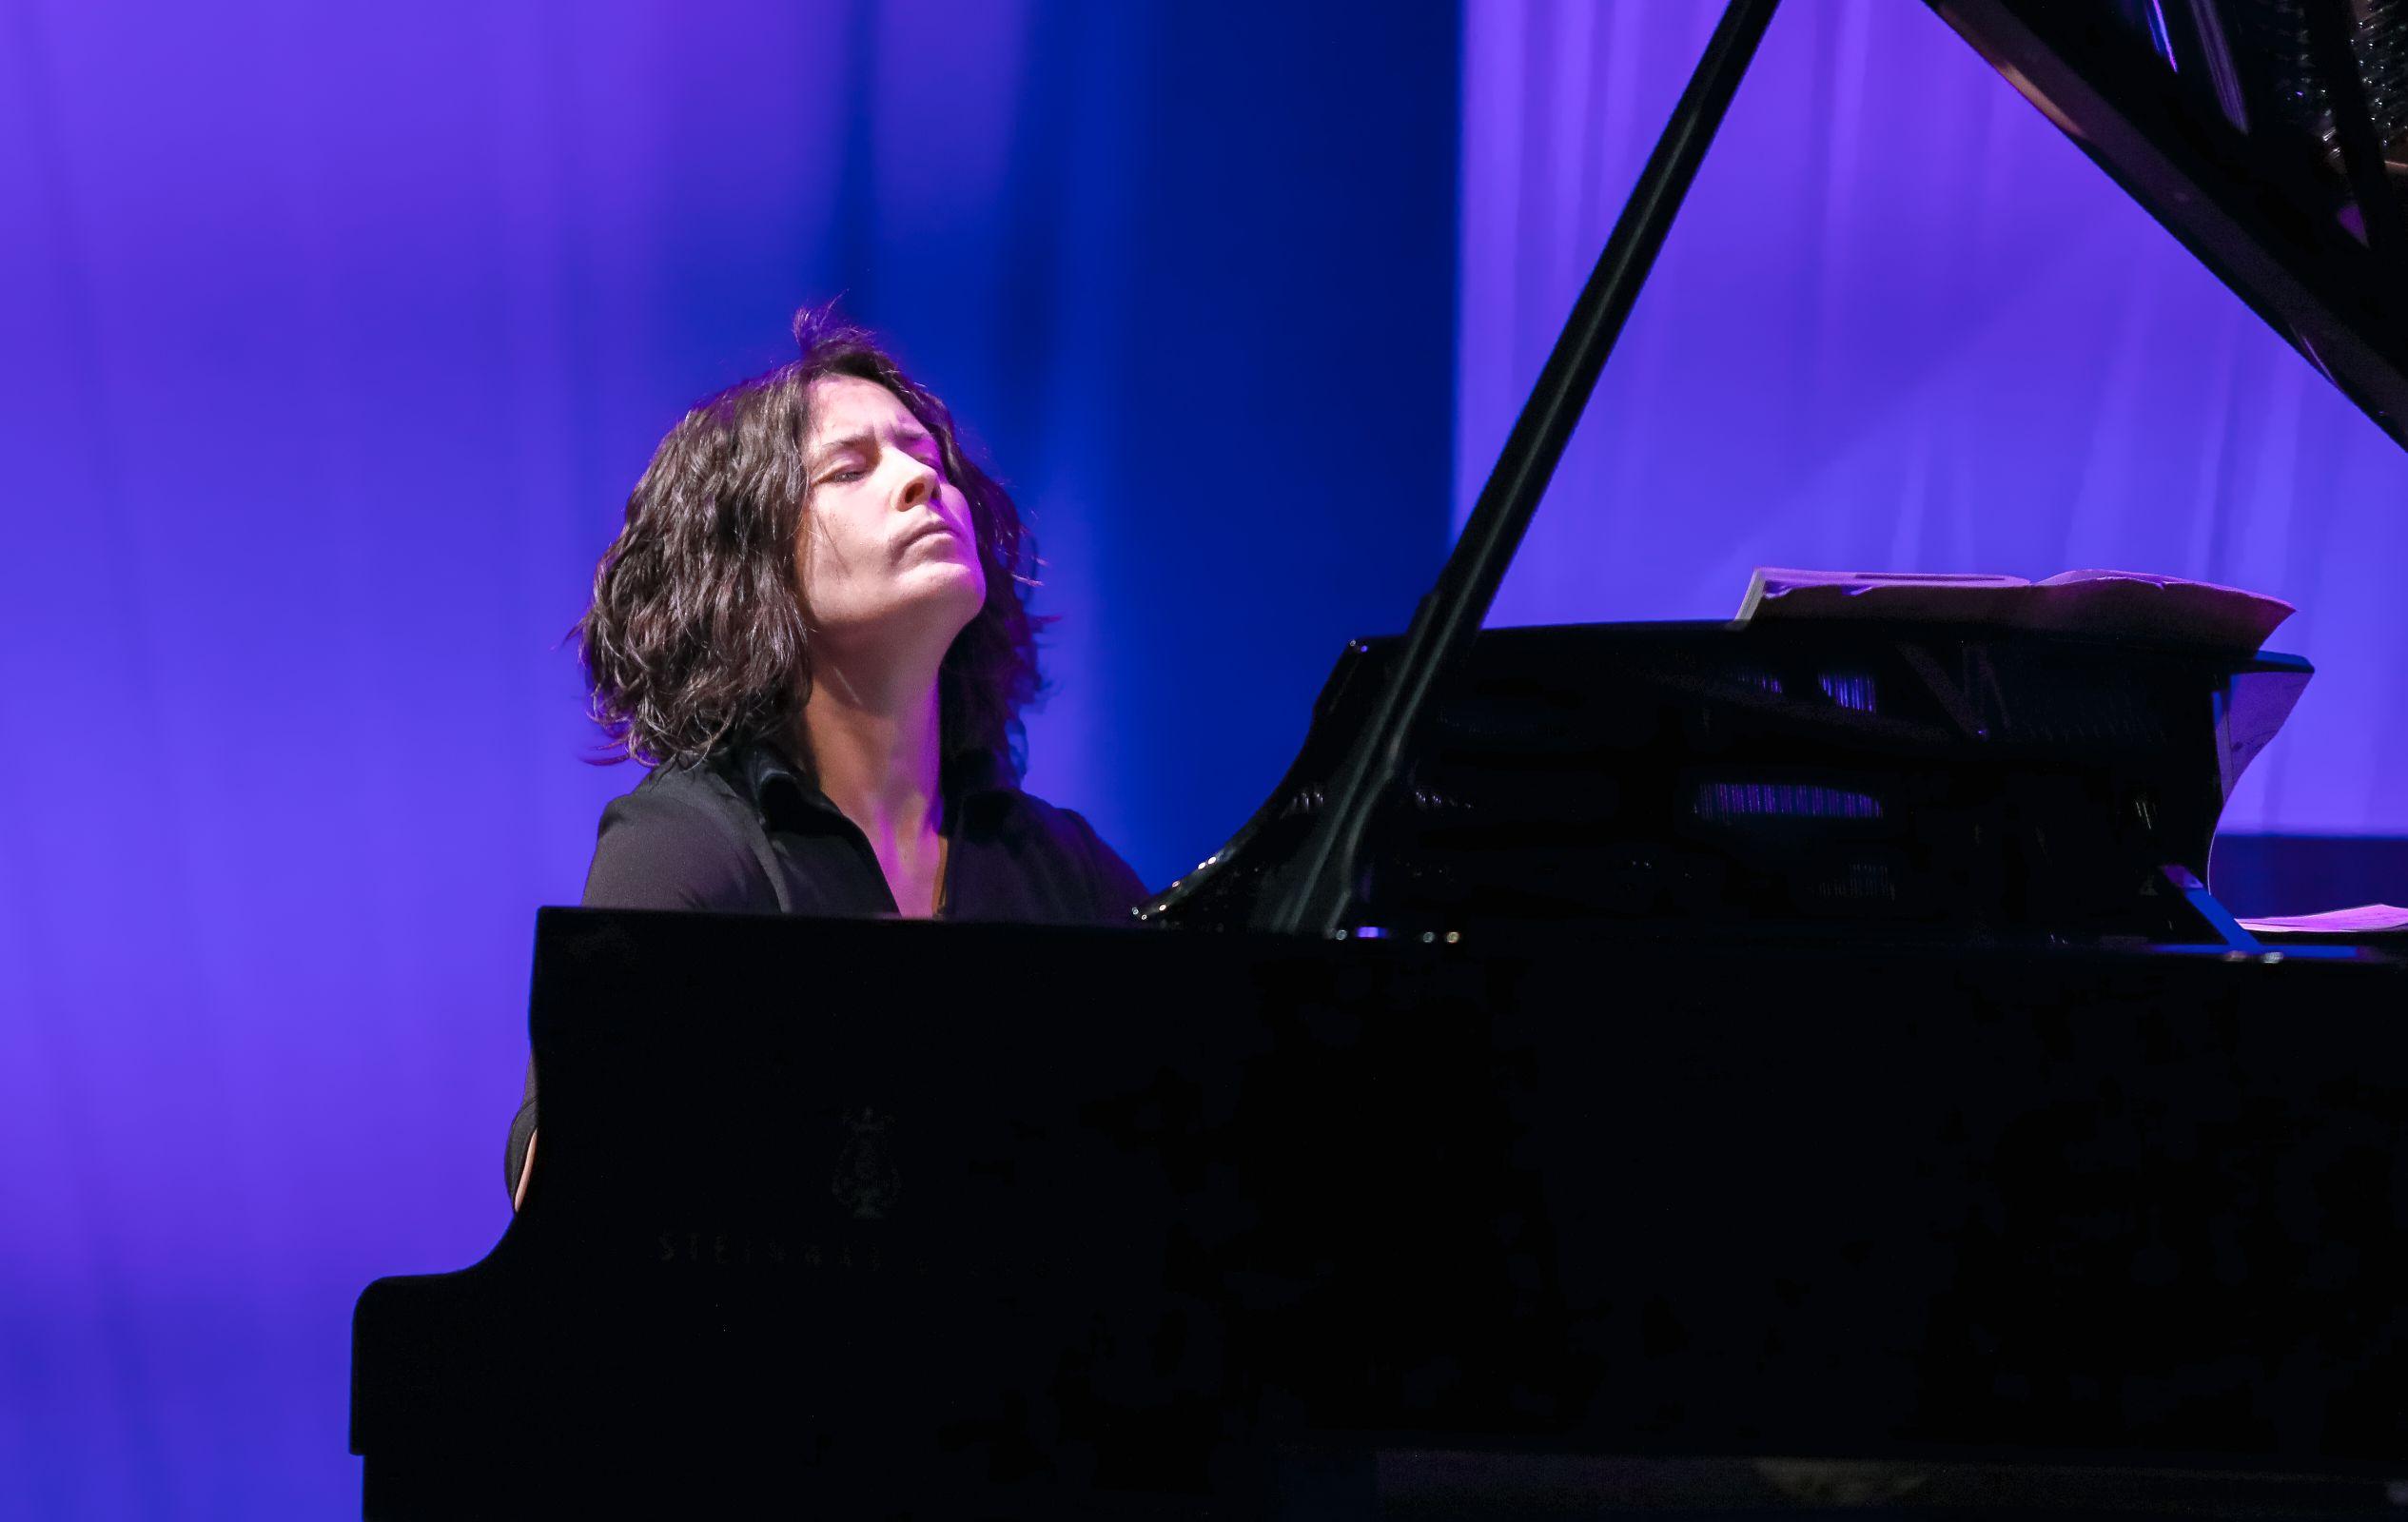 Varvara Myagkova, piano